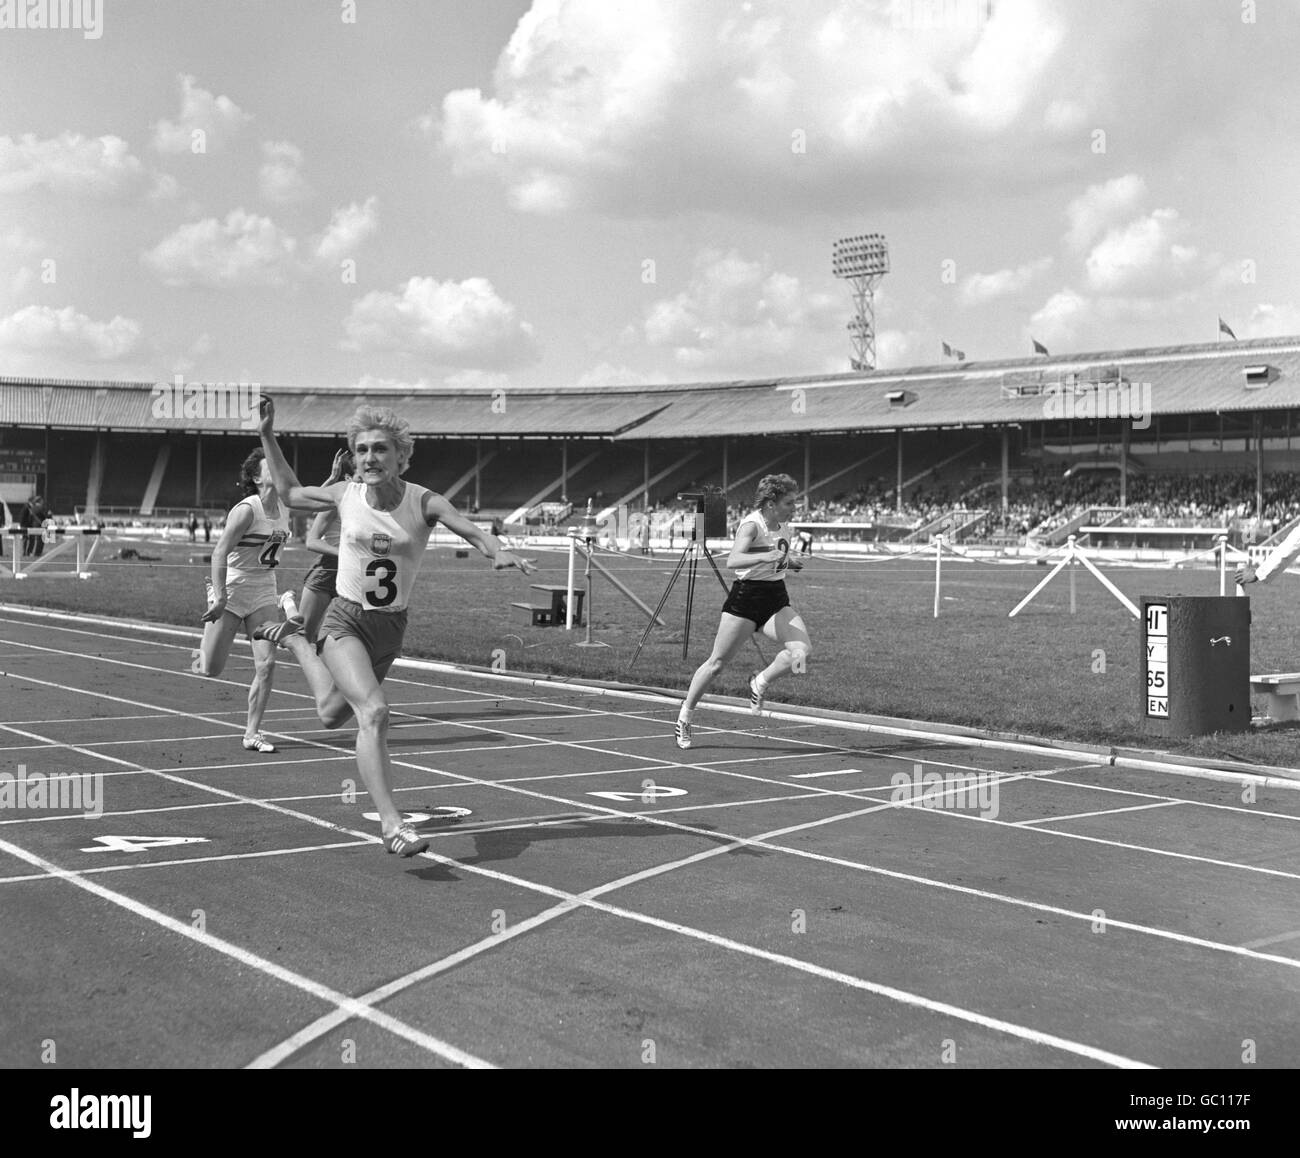 Athletics - Great Britain v Poland - Women's 100 metres - The White City Stadium Stock Photo